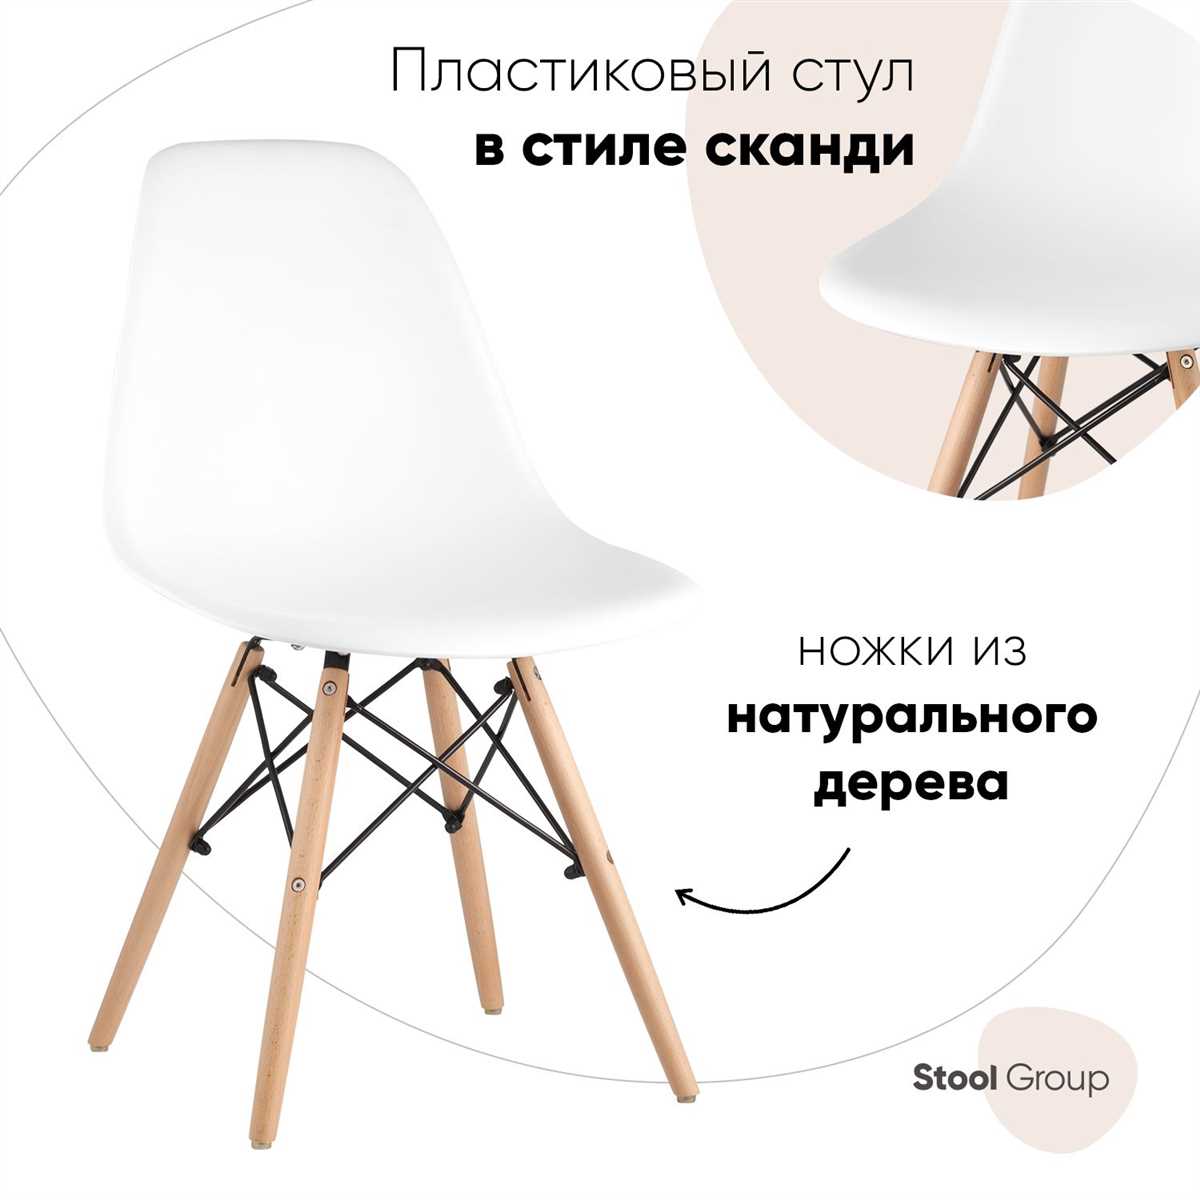 Преимущества деревянных стульев в сравнении с пластиковыми